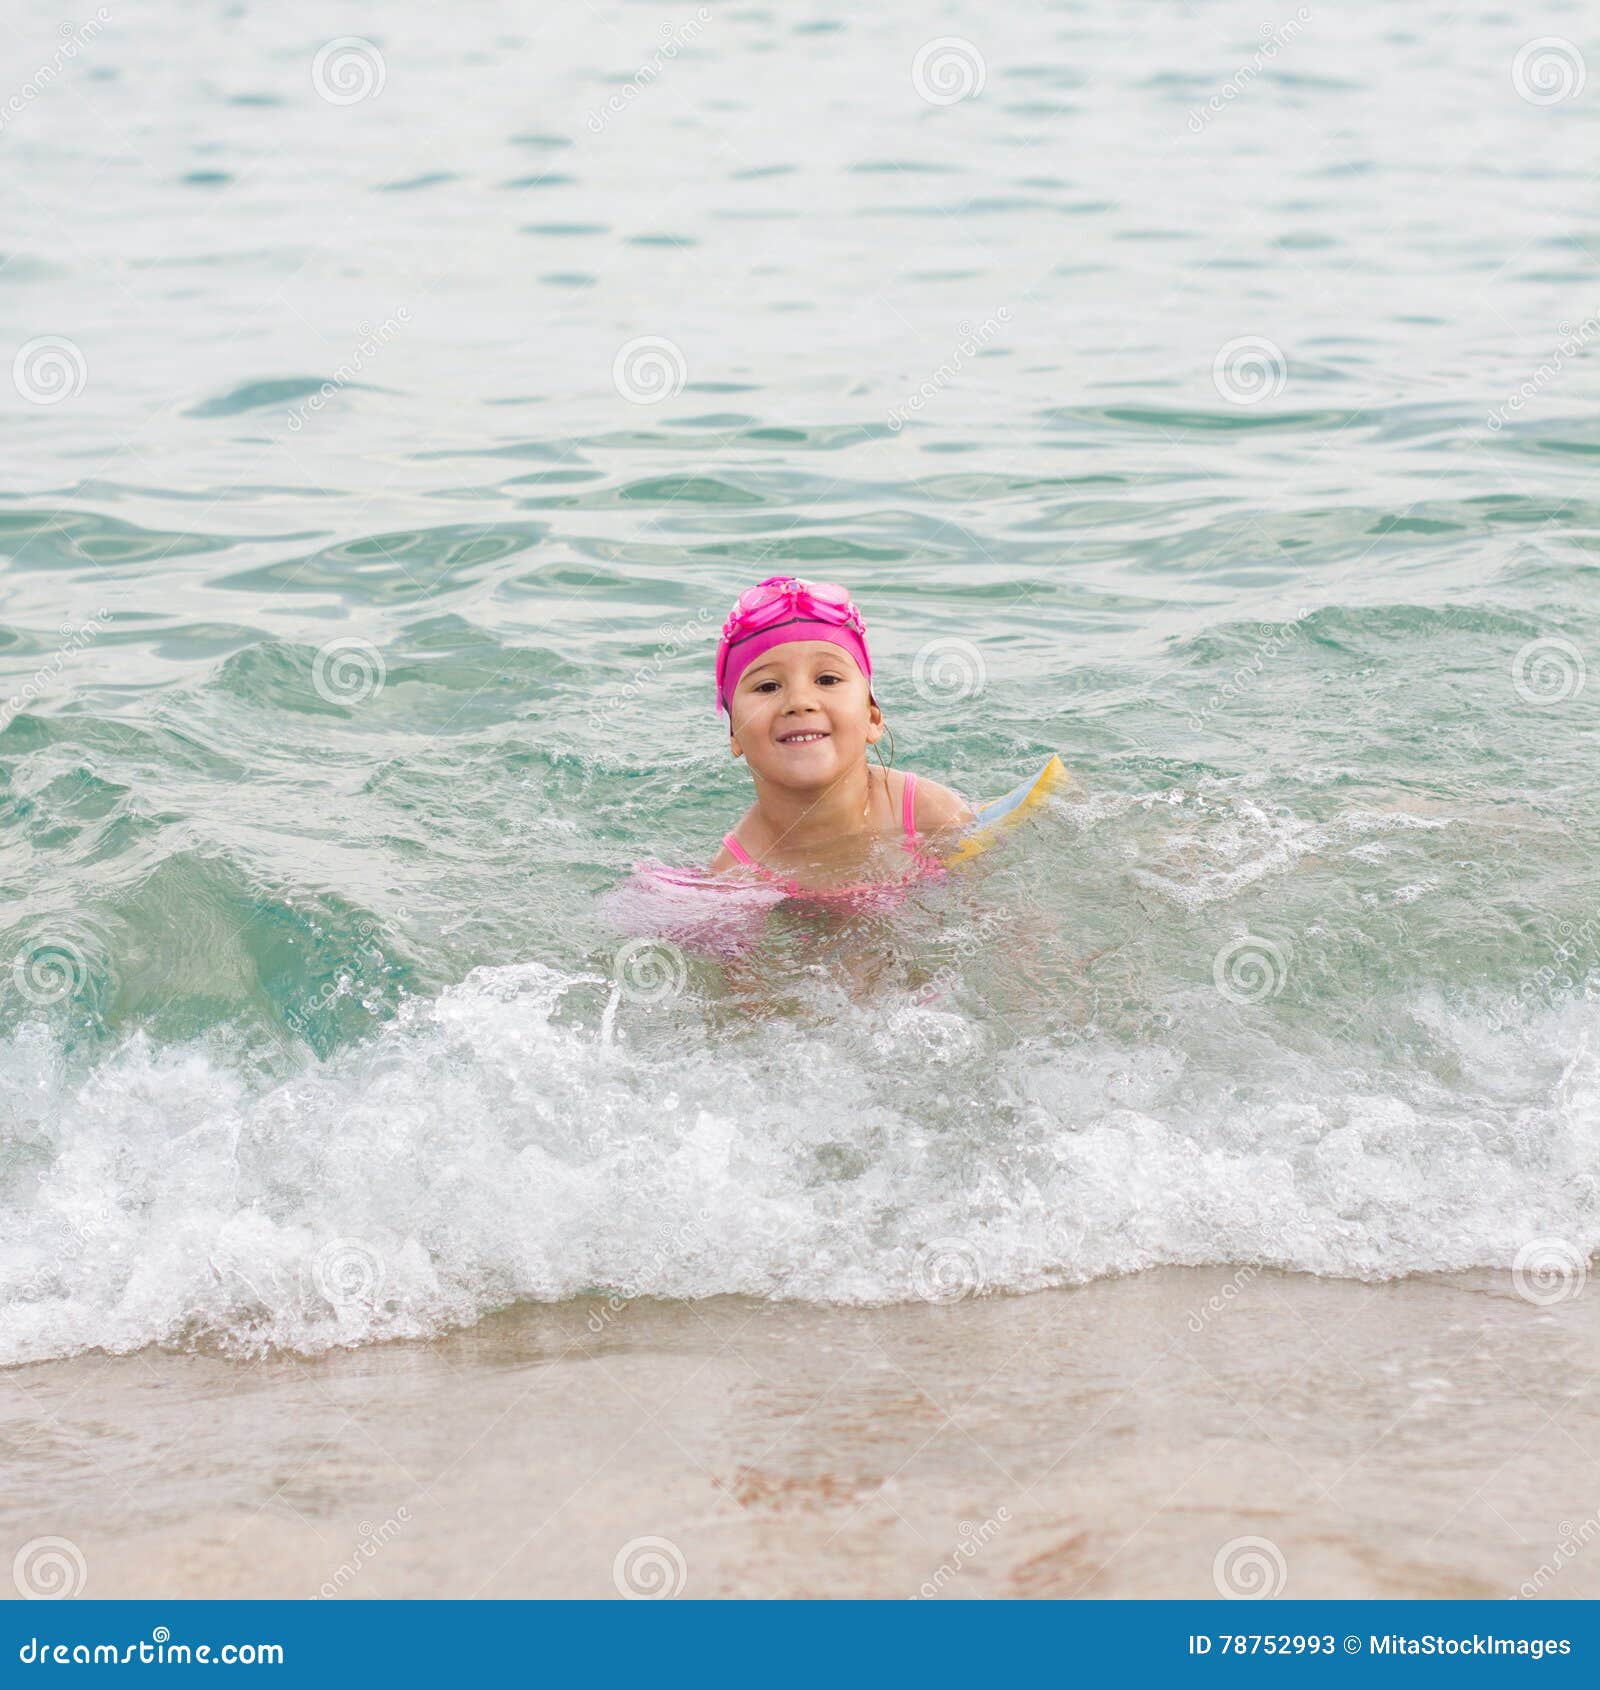 夏天兒童白天穿粉色泳裝的小女孩戶外泳池玩水攝影圖配圖背景圖桌布圖片免費下載 - Pngtree